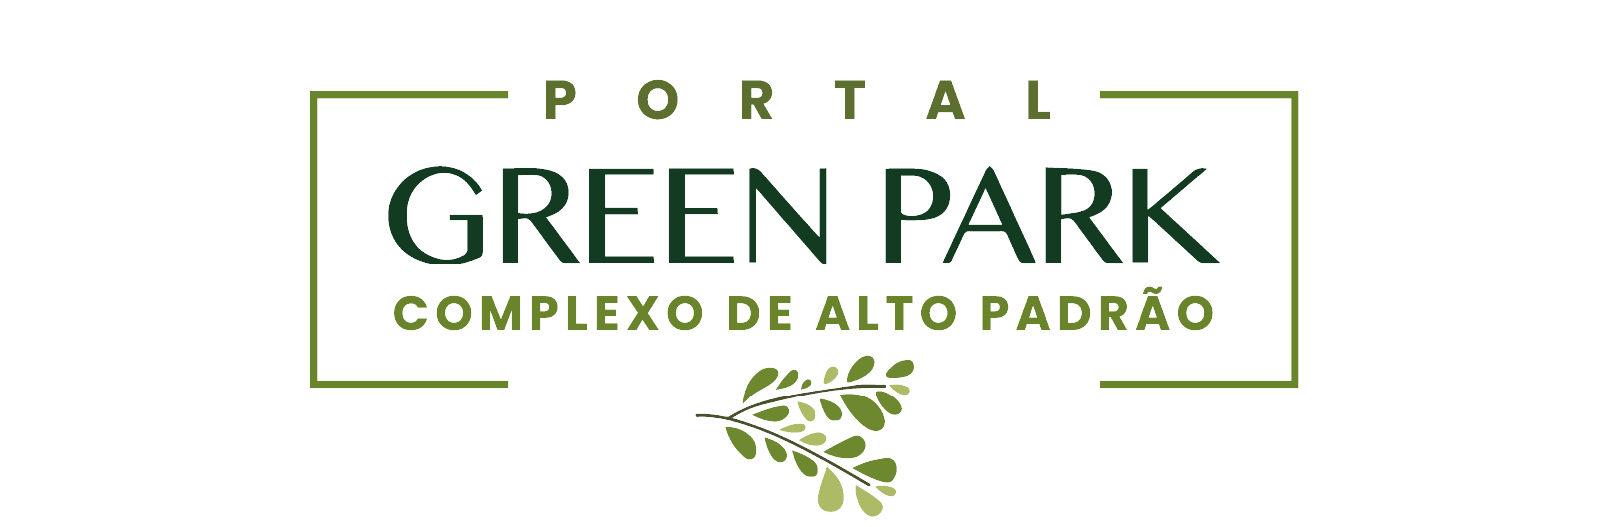 Portal Green Park